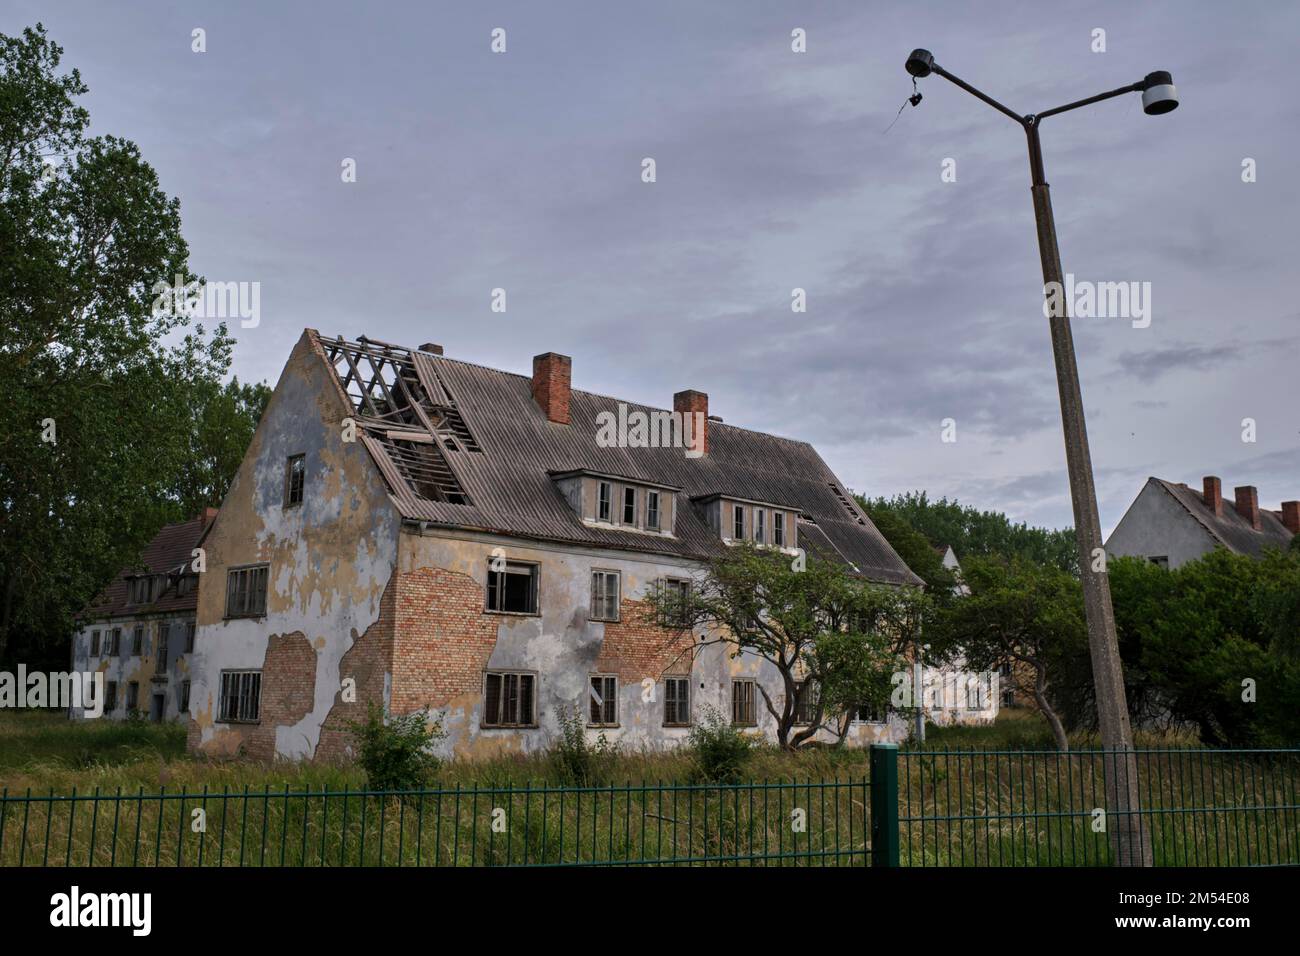 Allemagne, Rerik, 27. 06. 2020, maisons abandonnées, péninsule de Lampe Wustrow, zone restreinte, ancienne utilisation militaire Banque D'Images